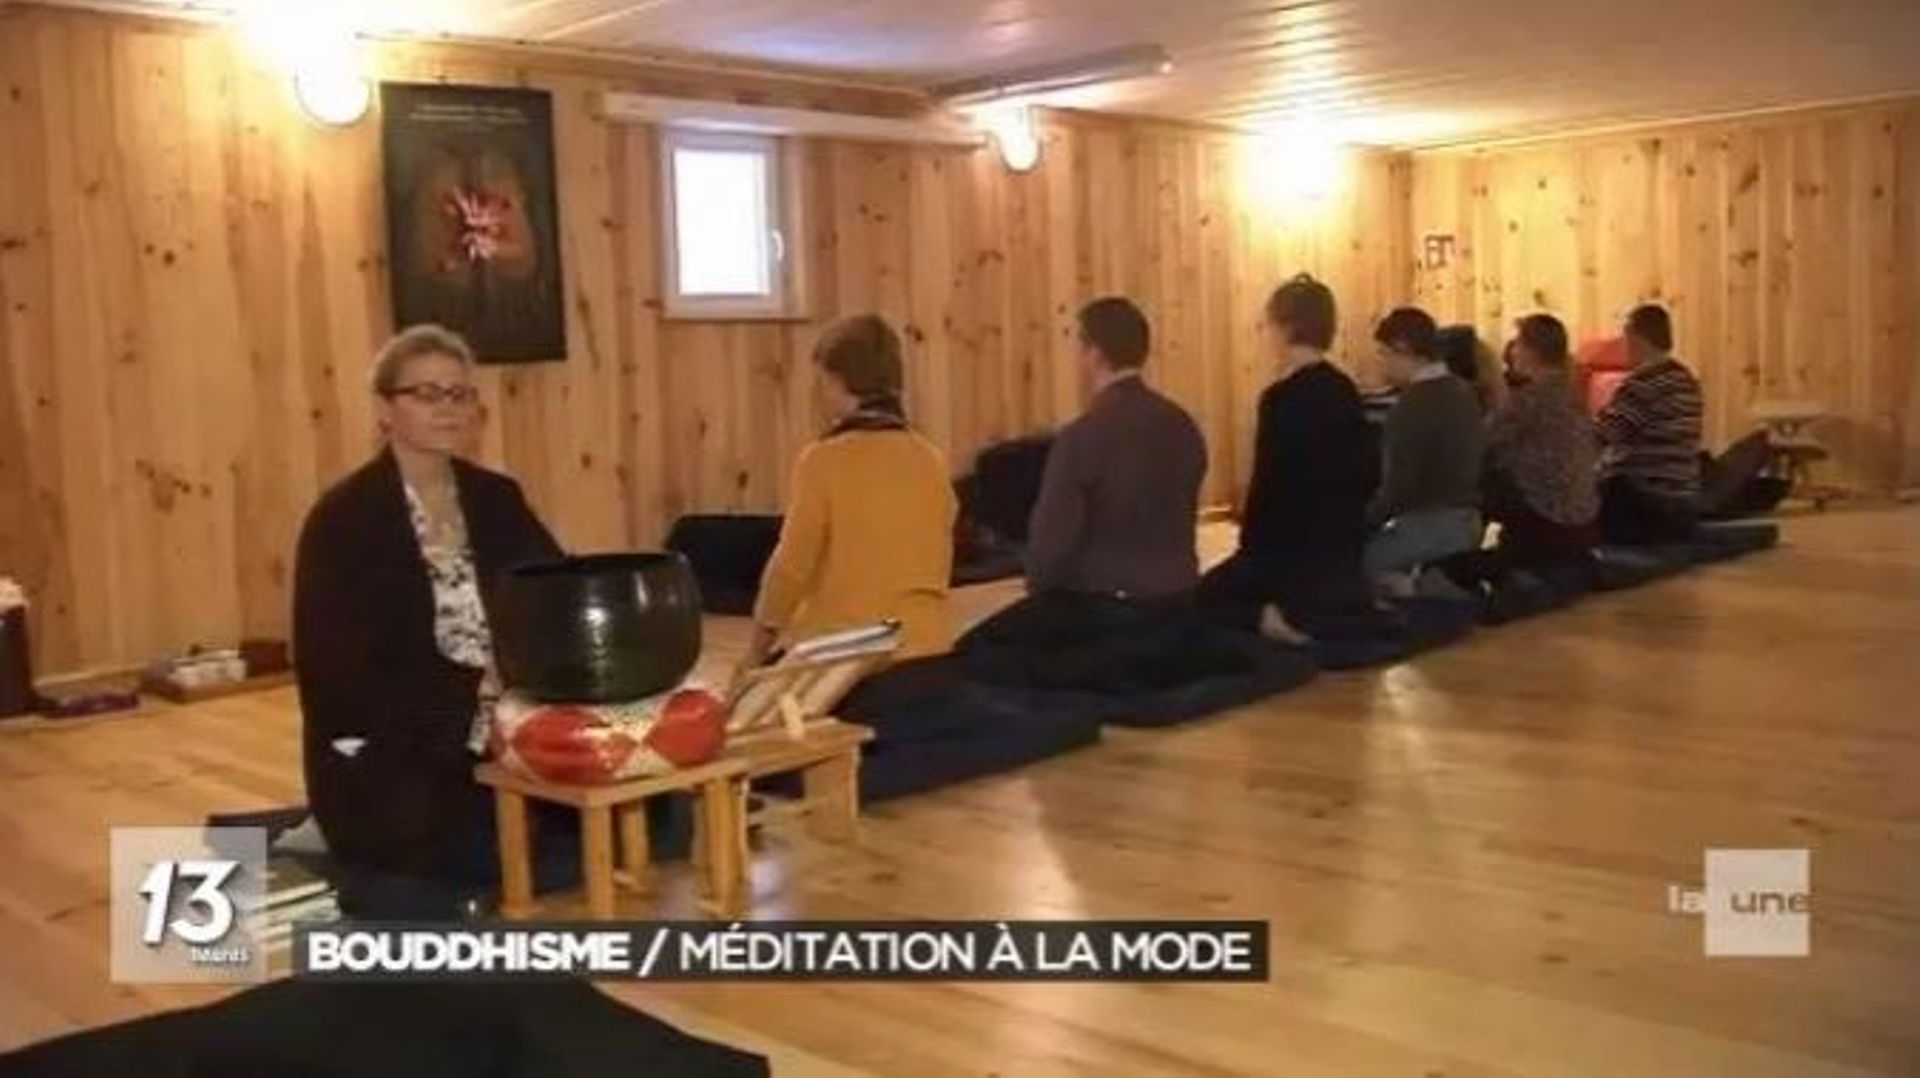 Le bouddhisme attire beaucoup d'adeptes, notamment pour la pratique de la méditation